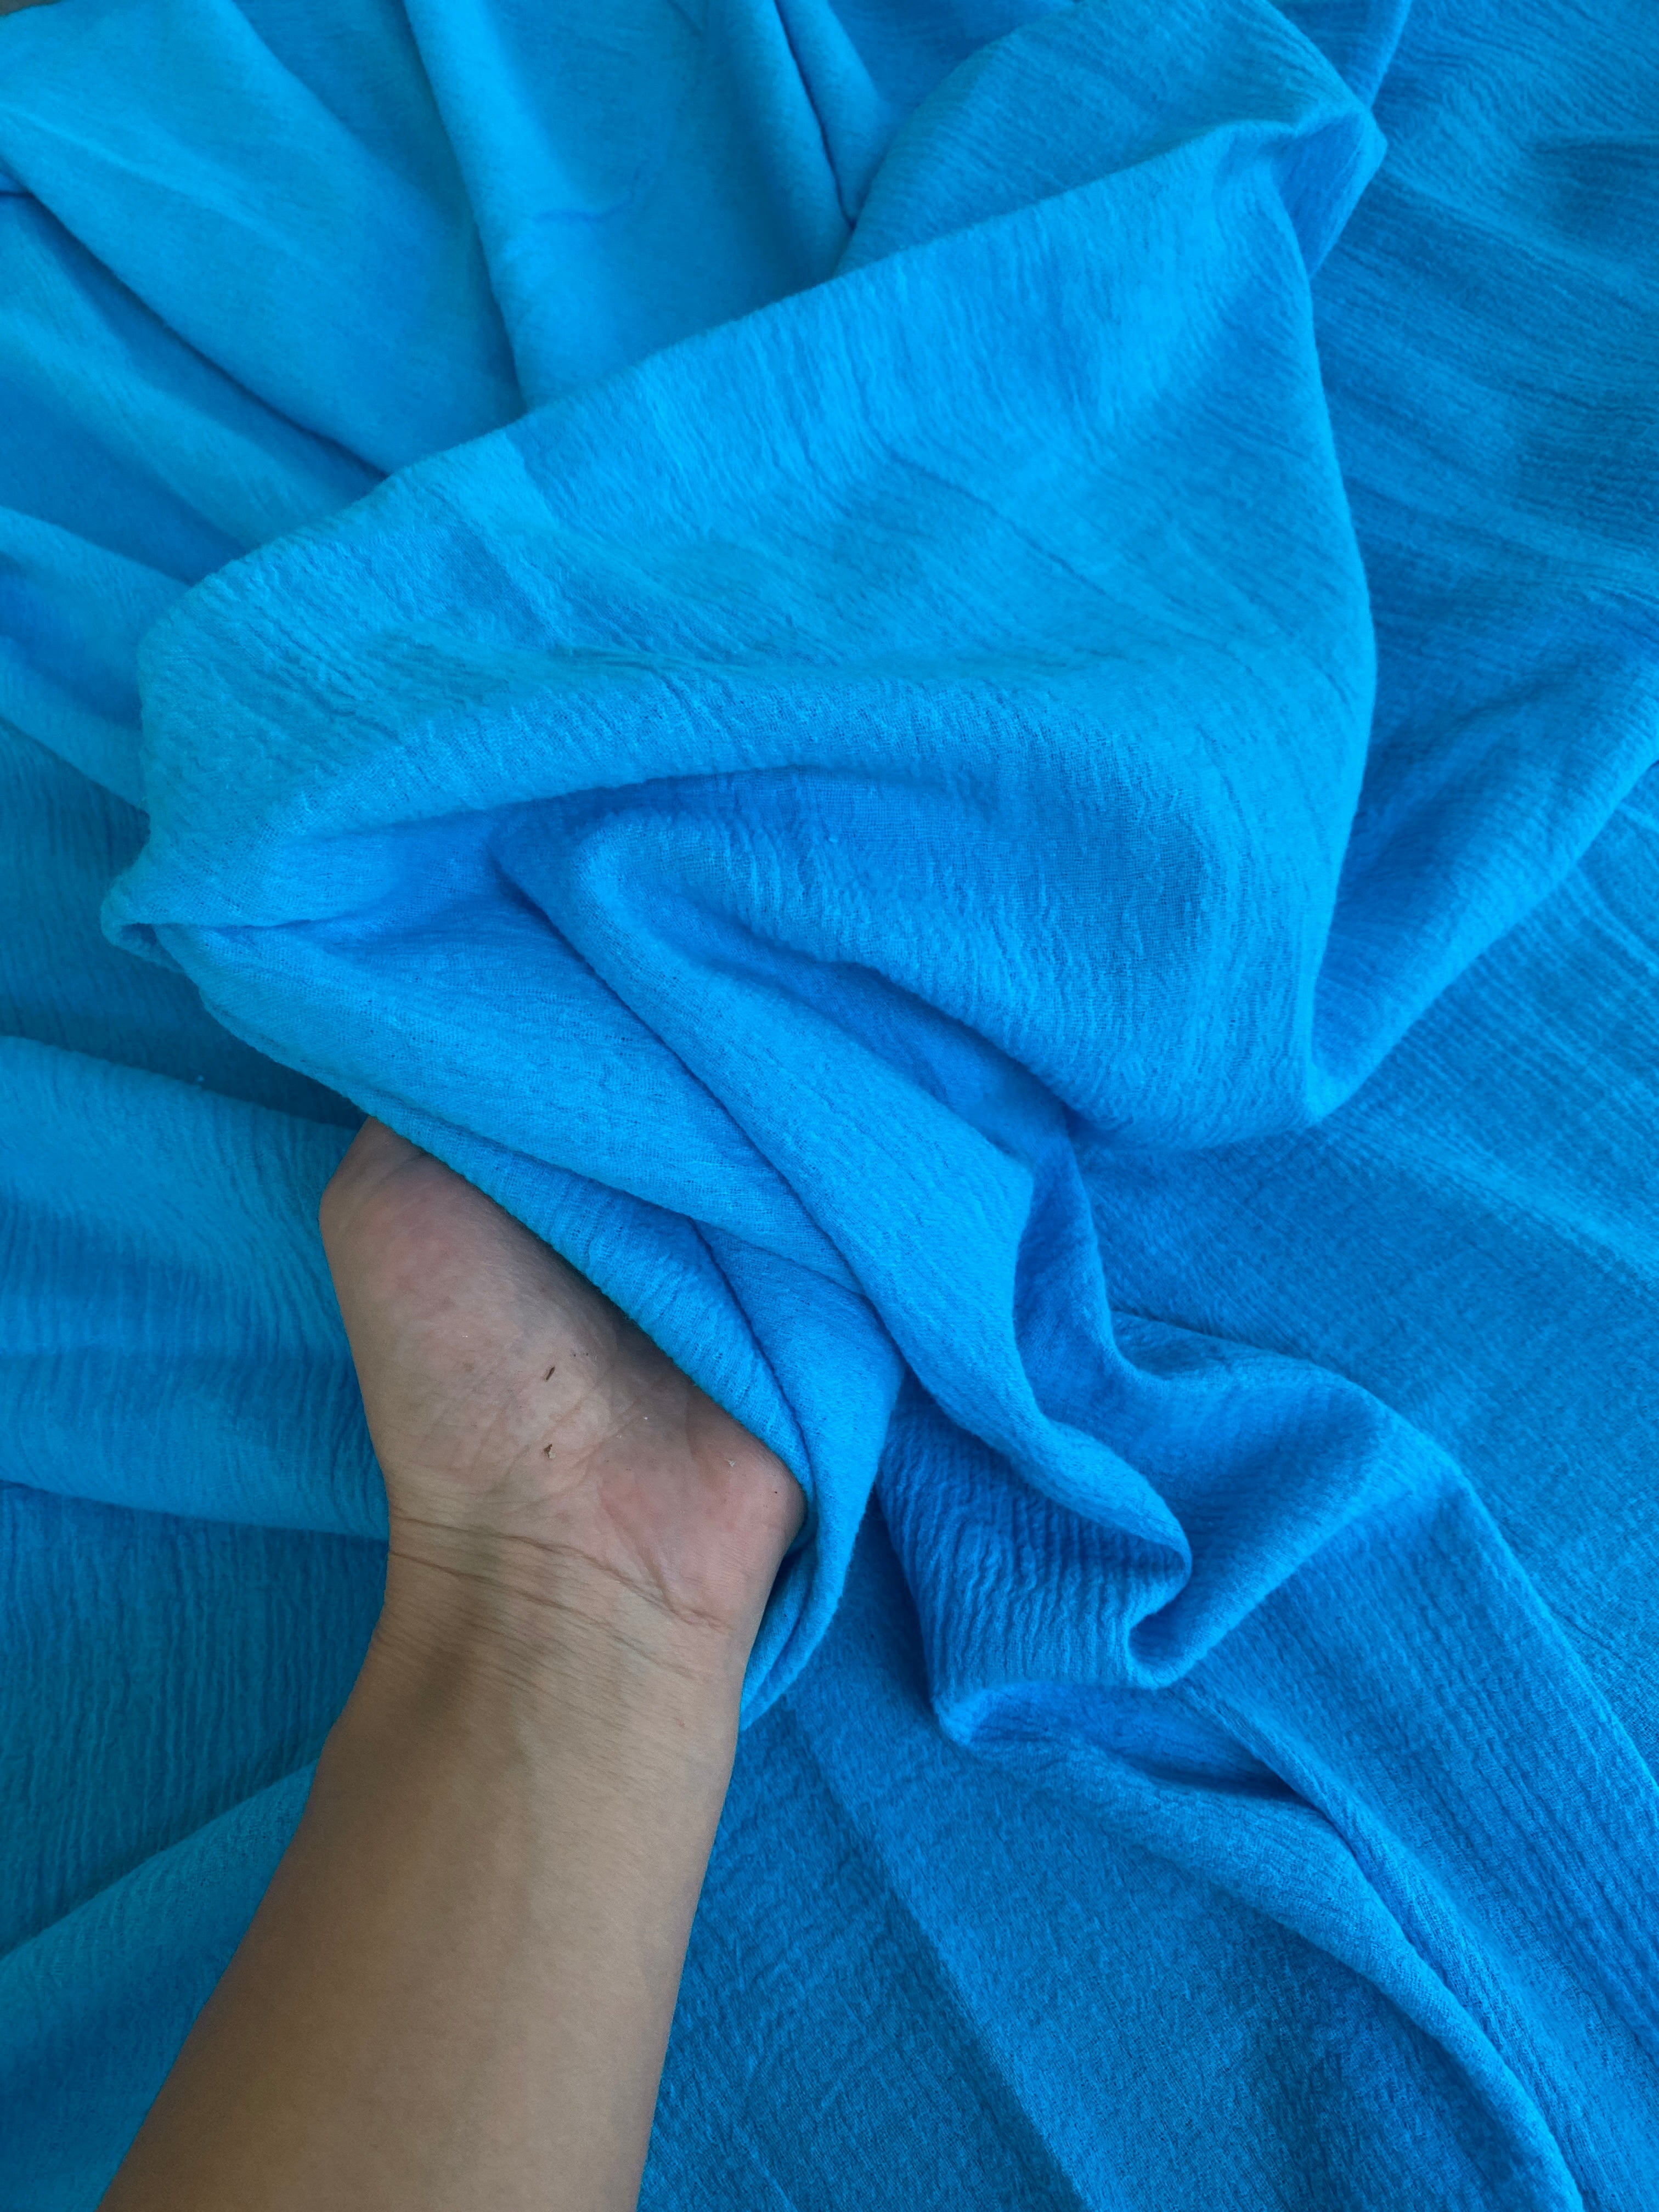 Turquoise linen gauze, dark blue linen gauze, blue linen gauze, linen gauze for woman, linen gauze for bride, linen gauze in low price, premium linen gauze